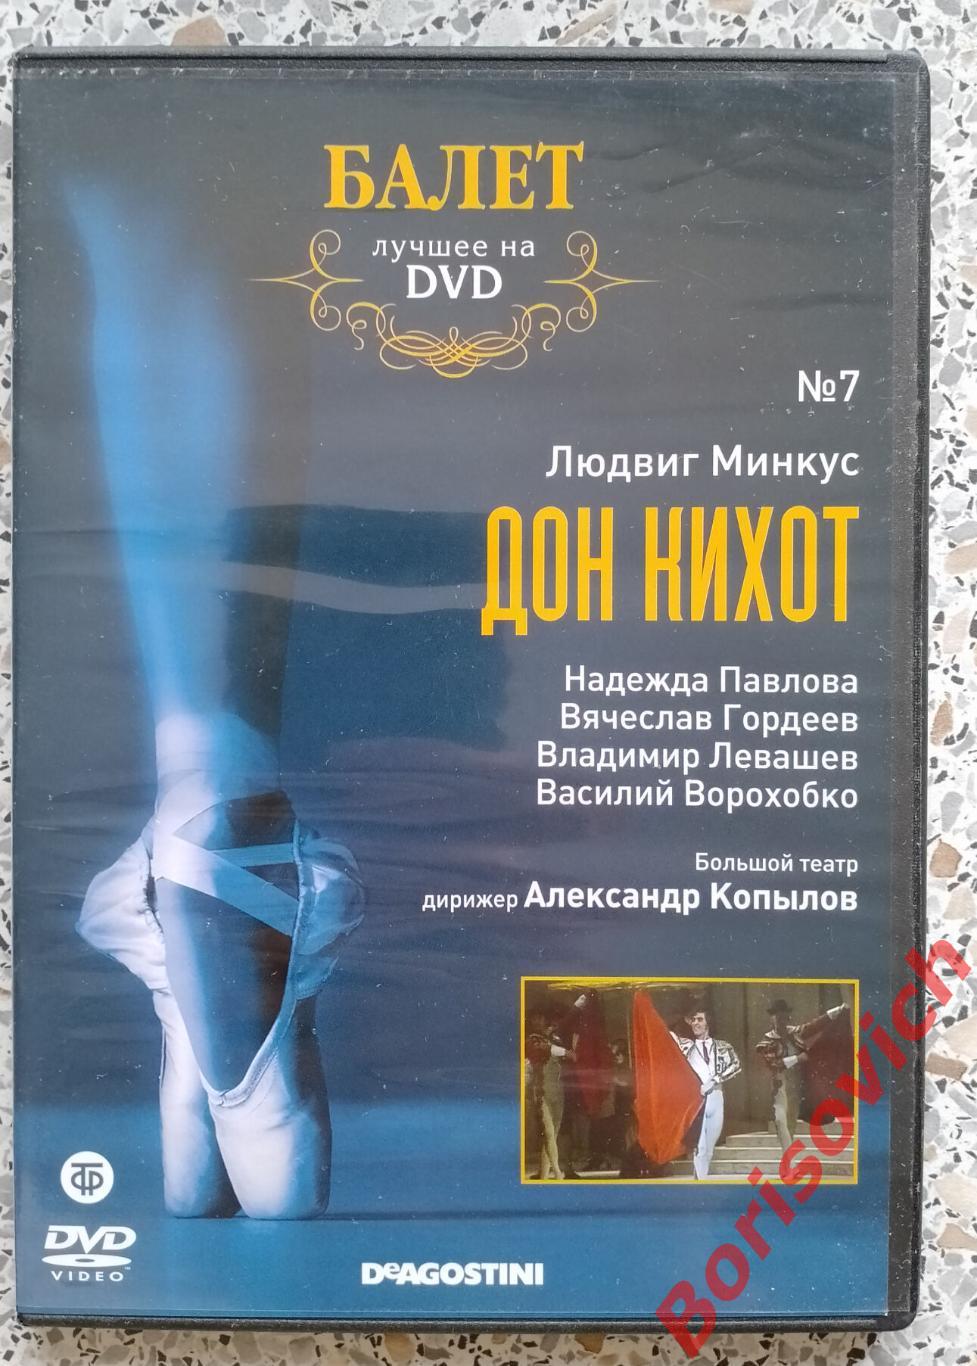 Балет лучшее на DVD Людвиг Минкус ДОН КИХОТ